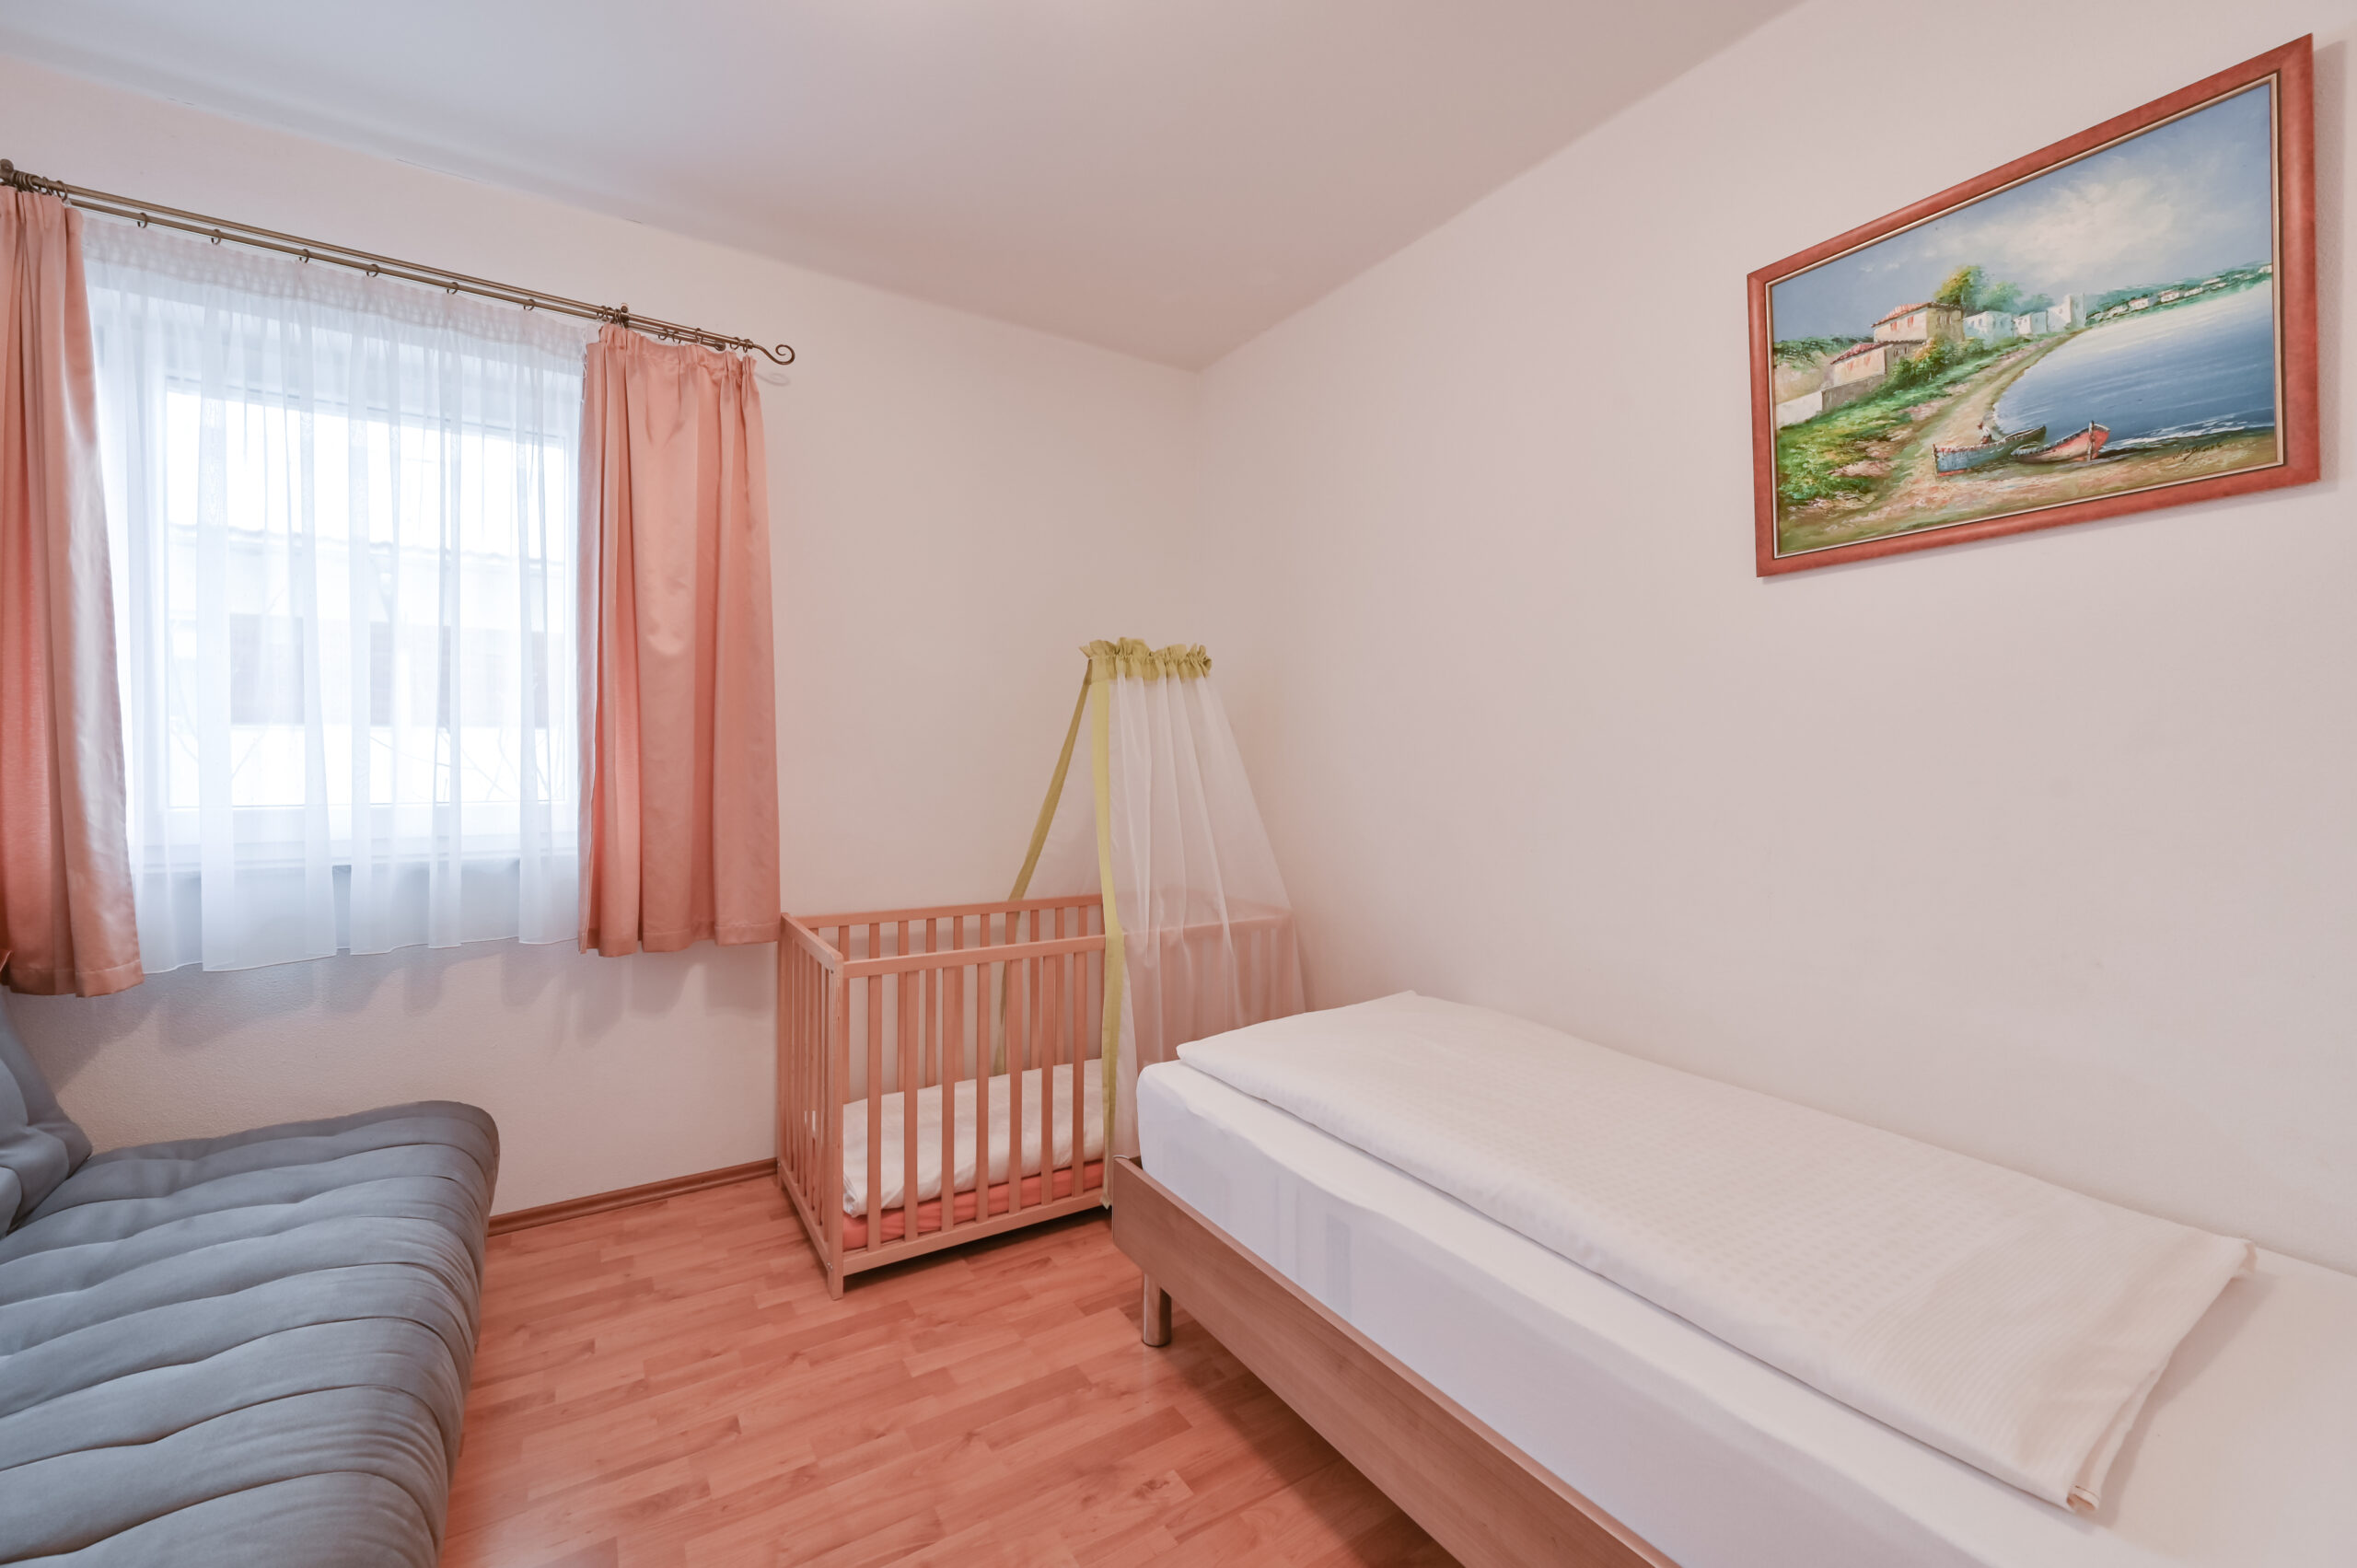 Ferienwohung Einzelschlafzimmer mit Kinderbett   Hotel Ludwigs FeWo San Marco 2318 scaled